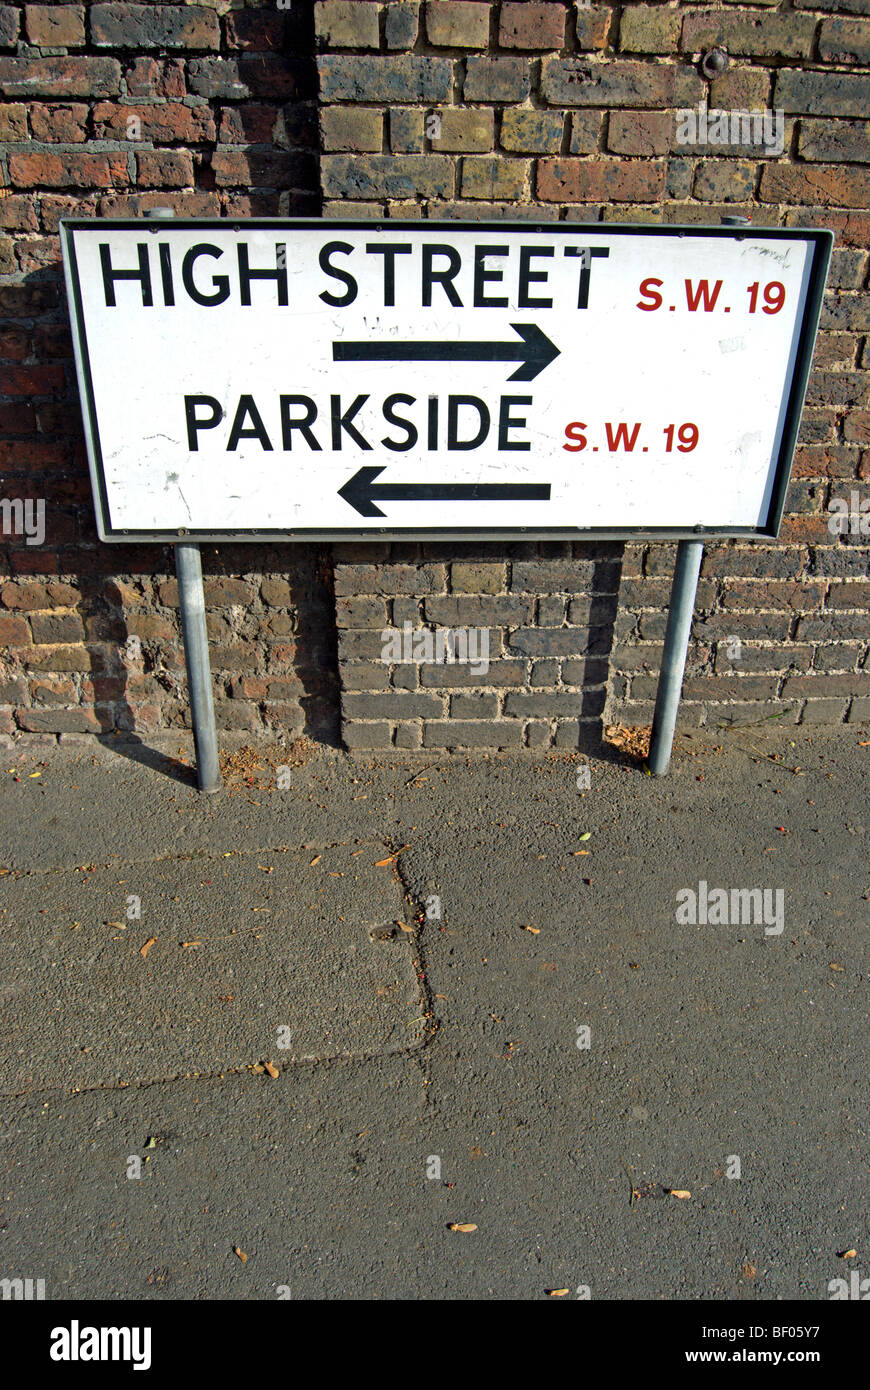 Straßenschild für High Street und Parkside, in Wimbledon, London sw19, england Stockfoto